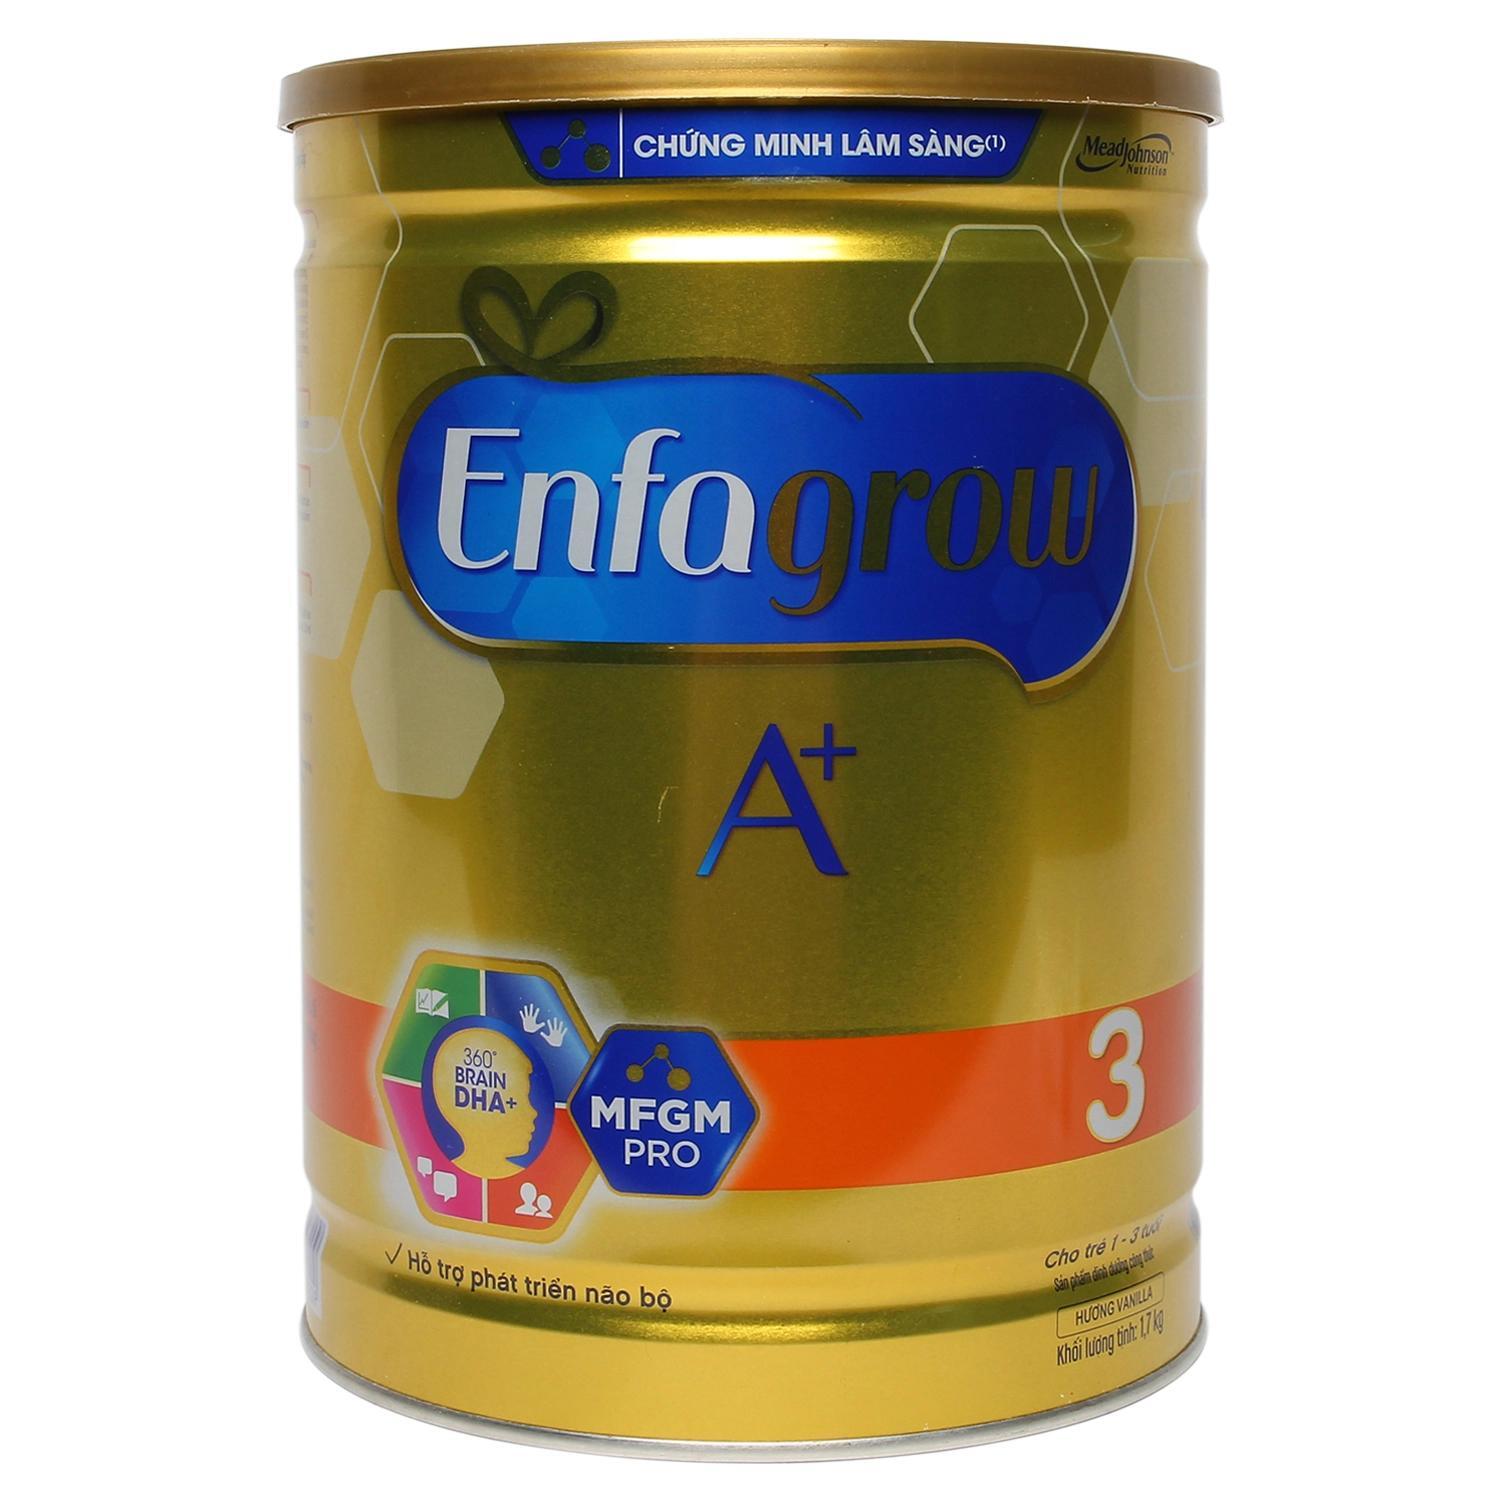 Sữa bột Enfagrow A+ 3 - hộp 1,7kg (dành cho trẻ từ 1 - 3 tuổi)